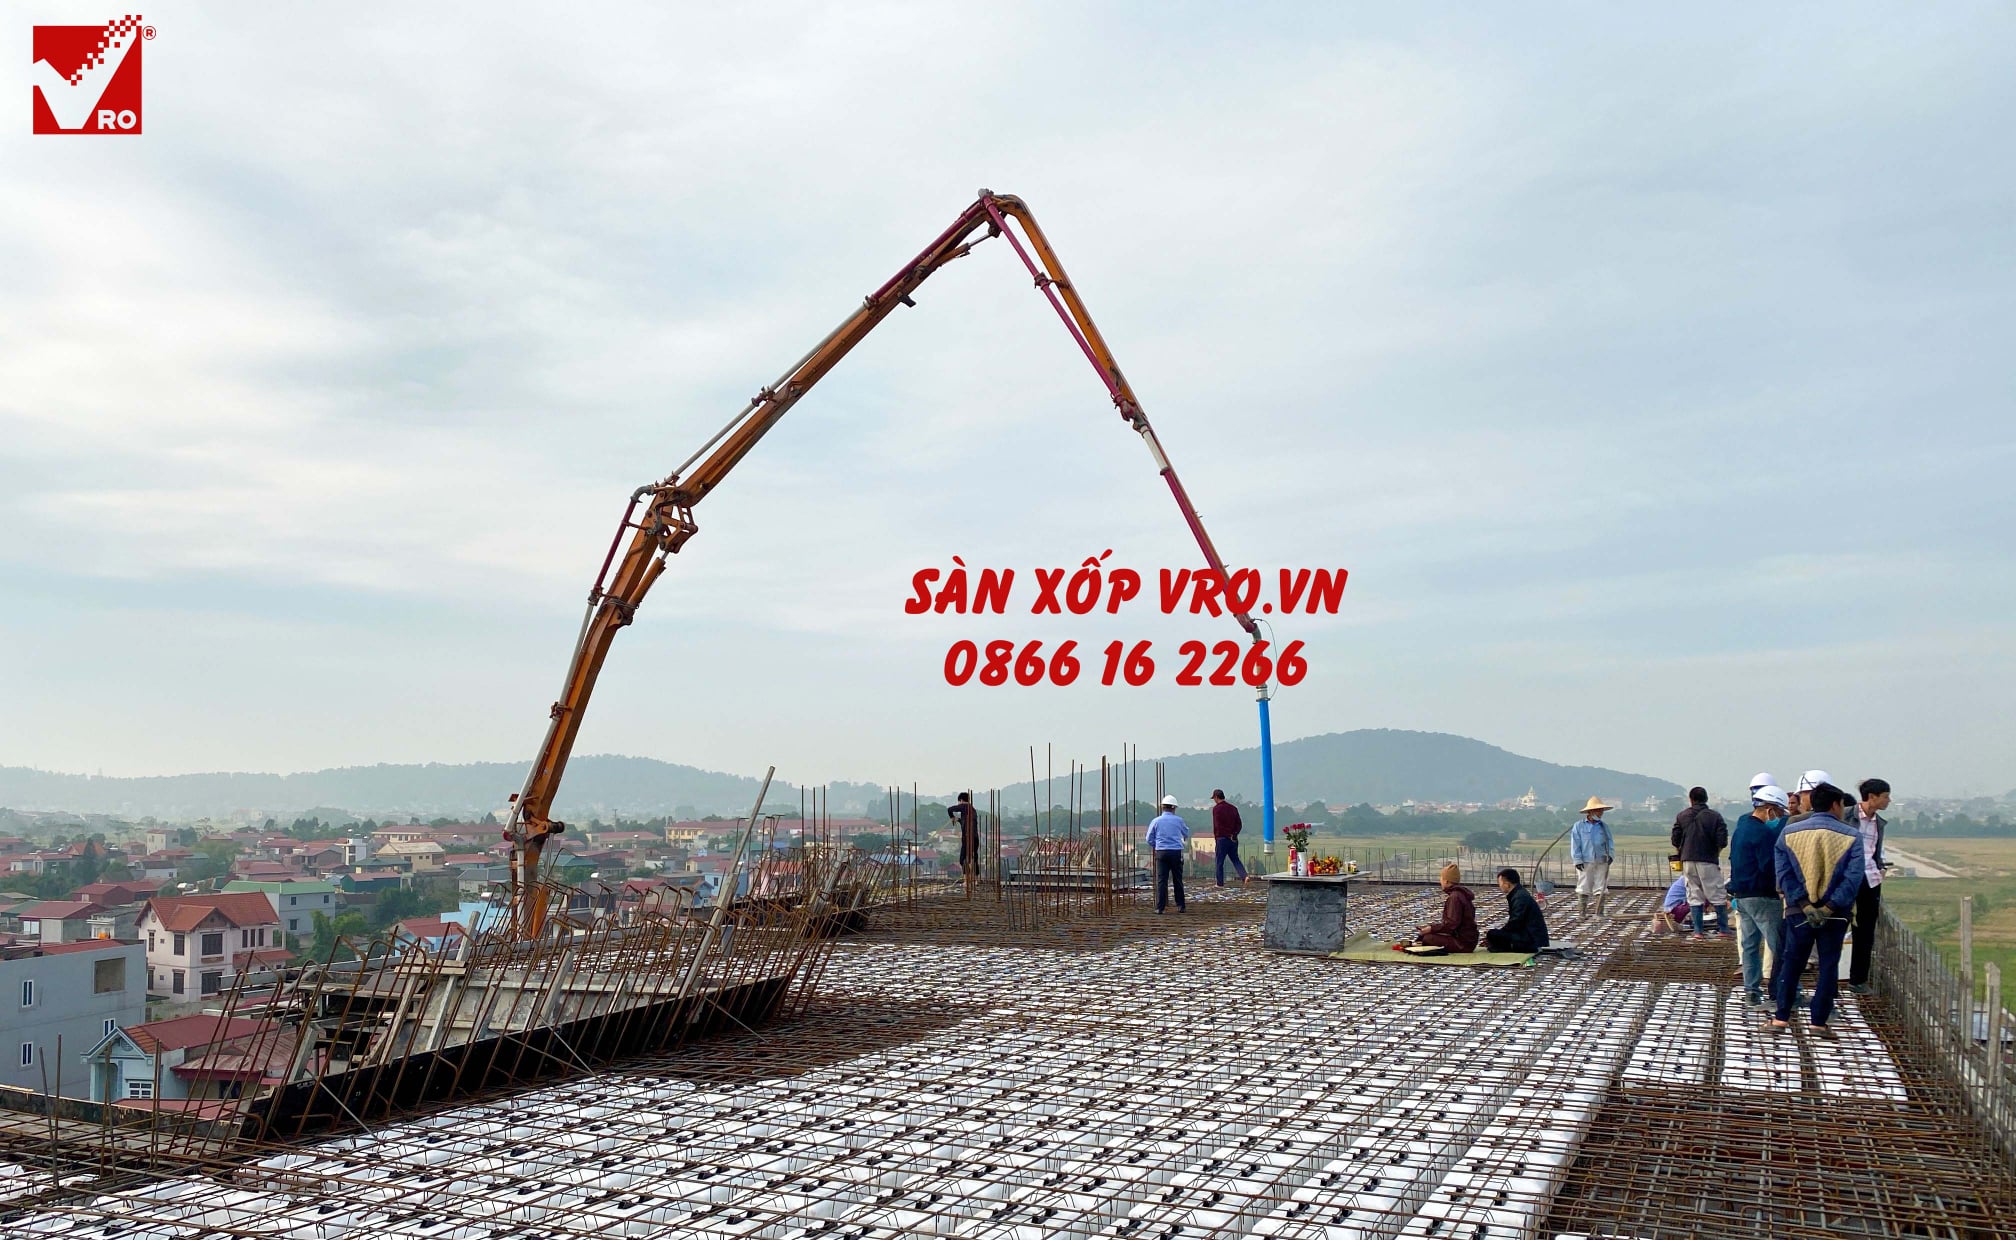 Thi công sàn xốp cho công trình trung tâm thương mại Palado - Bắc Ninh